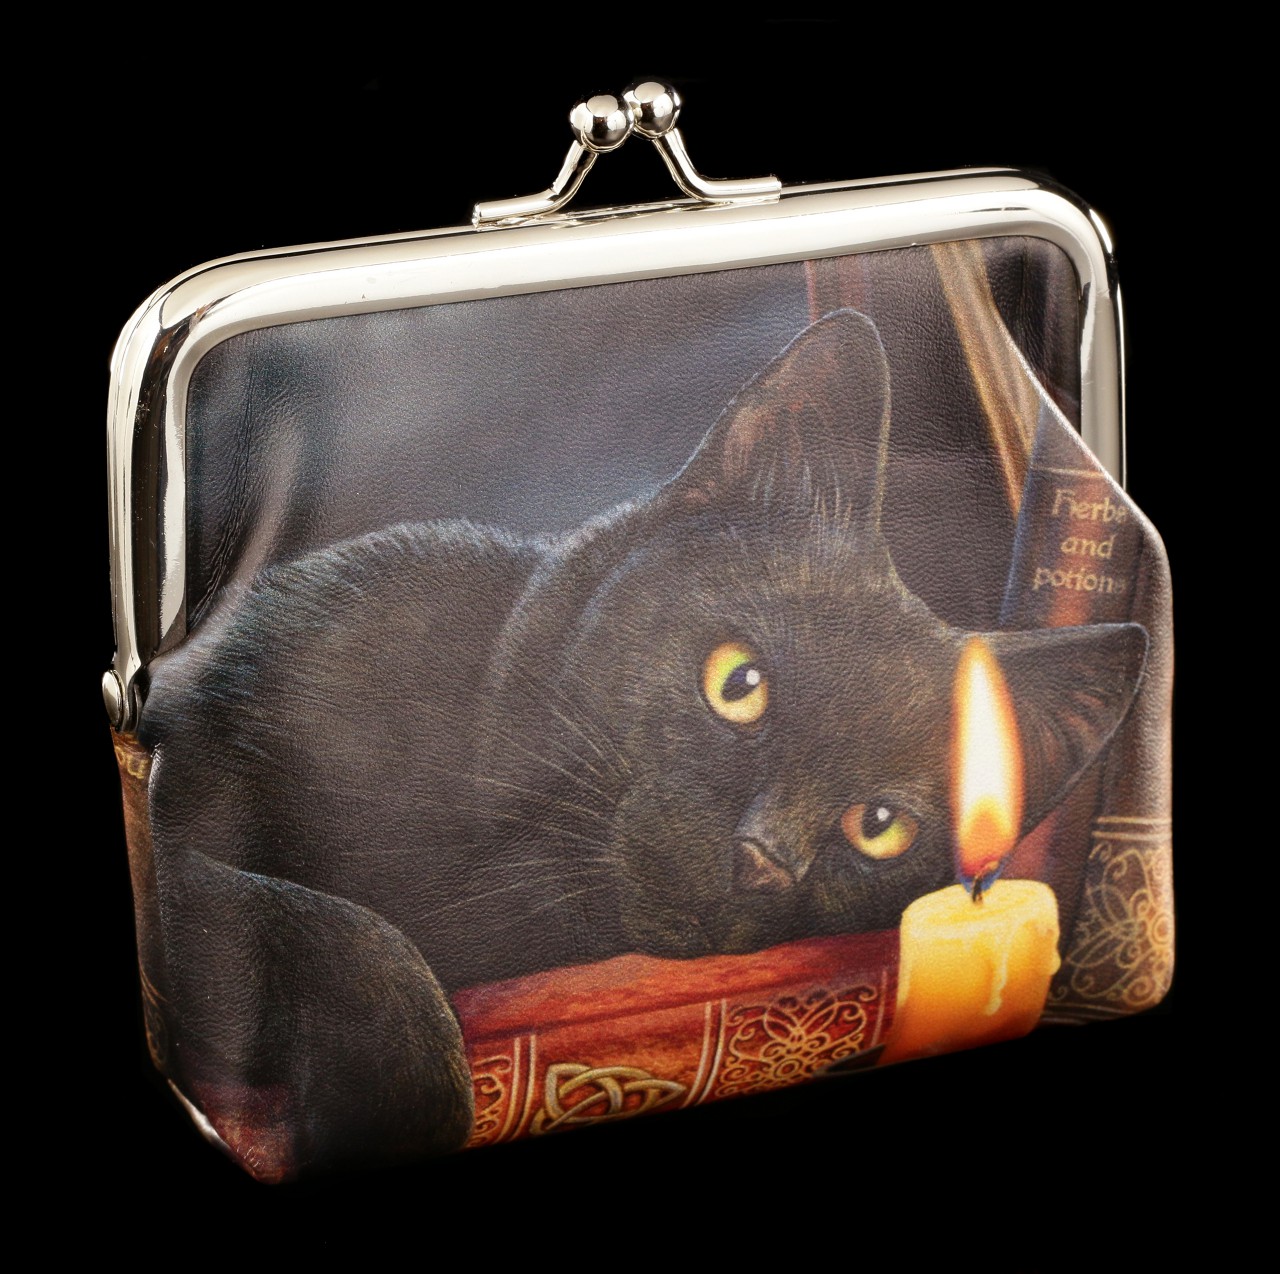 Geldbeutel mit Katze - The Witching Hour